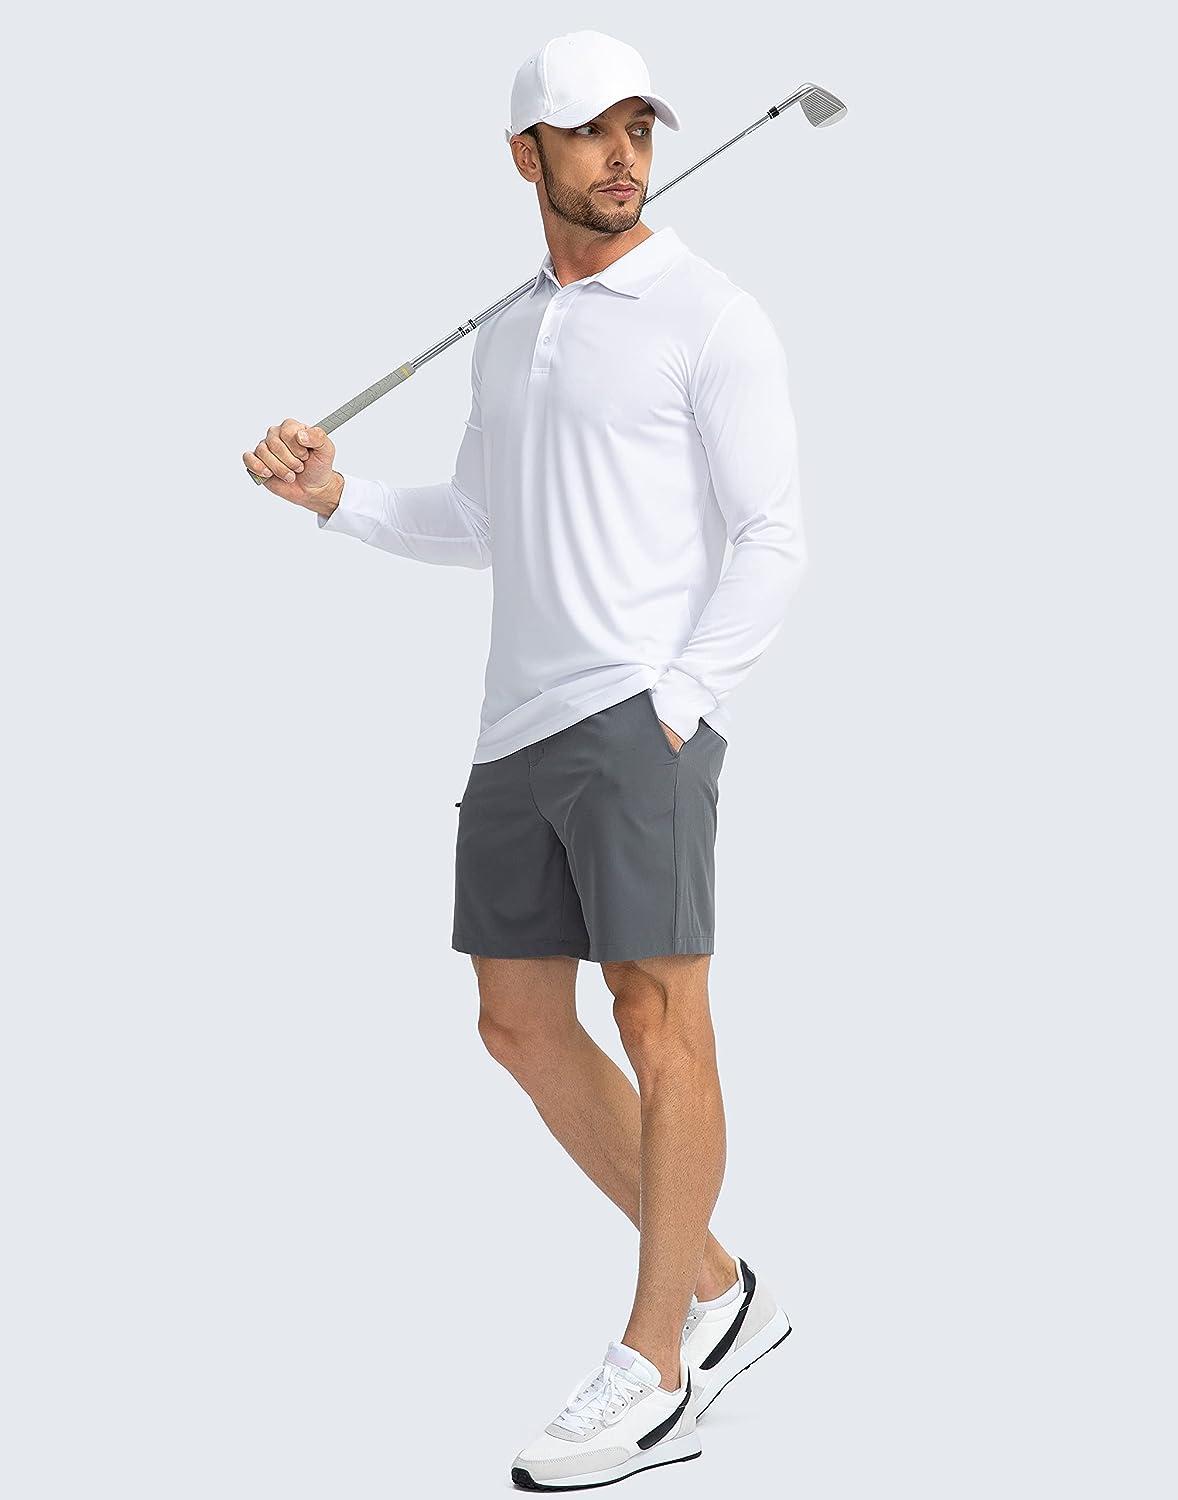  Mens Polo Shirt Long Sleeve Golf Shirts Lightweight